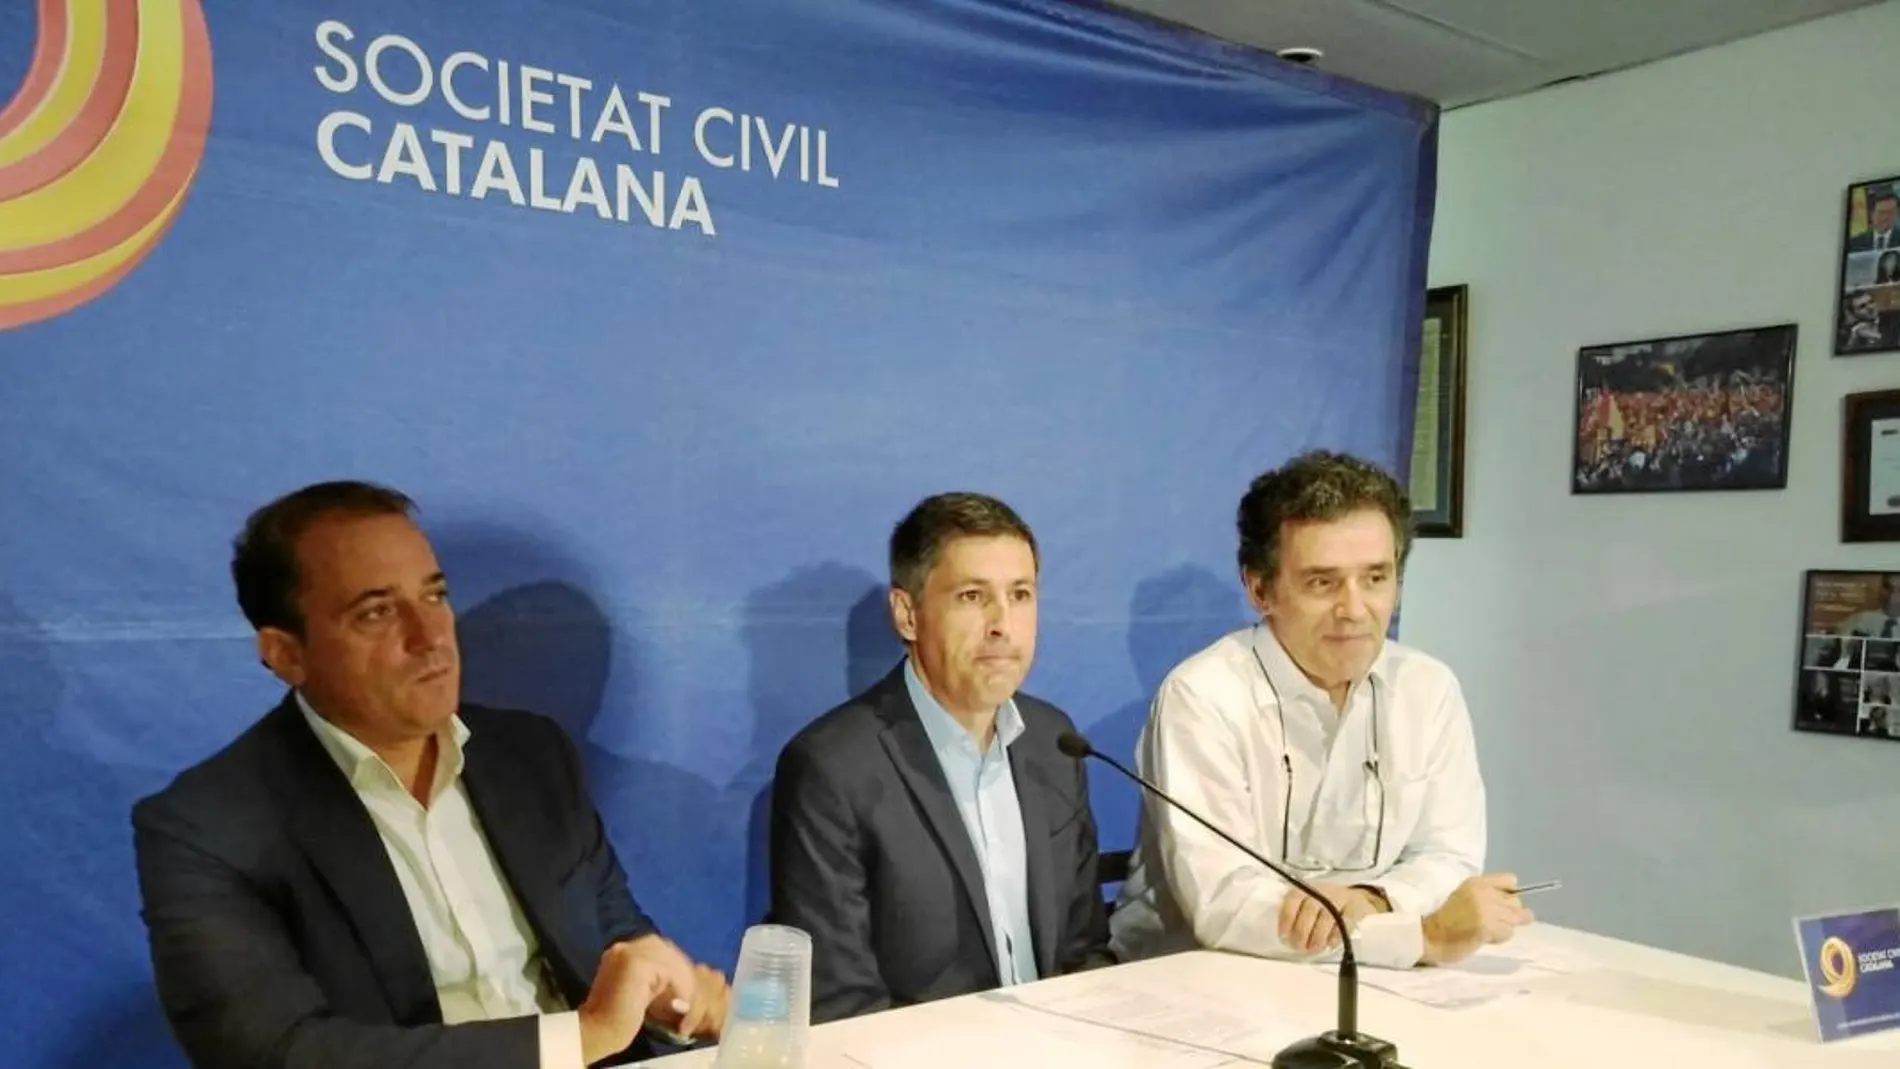 El presidente de Societat Civil Catalana, José Rosiñol, compareció ayer acompañado de gabinetes jurídicos. Foto: SCC